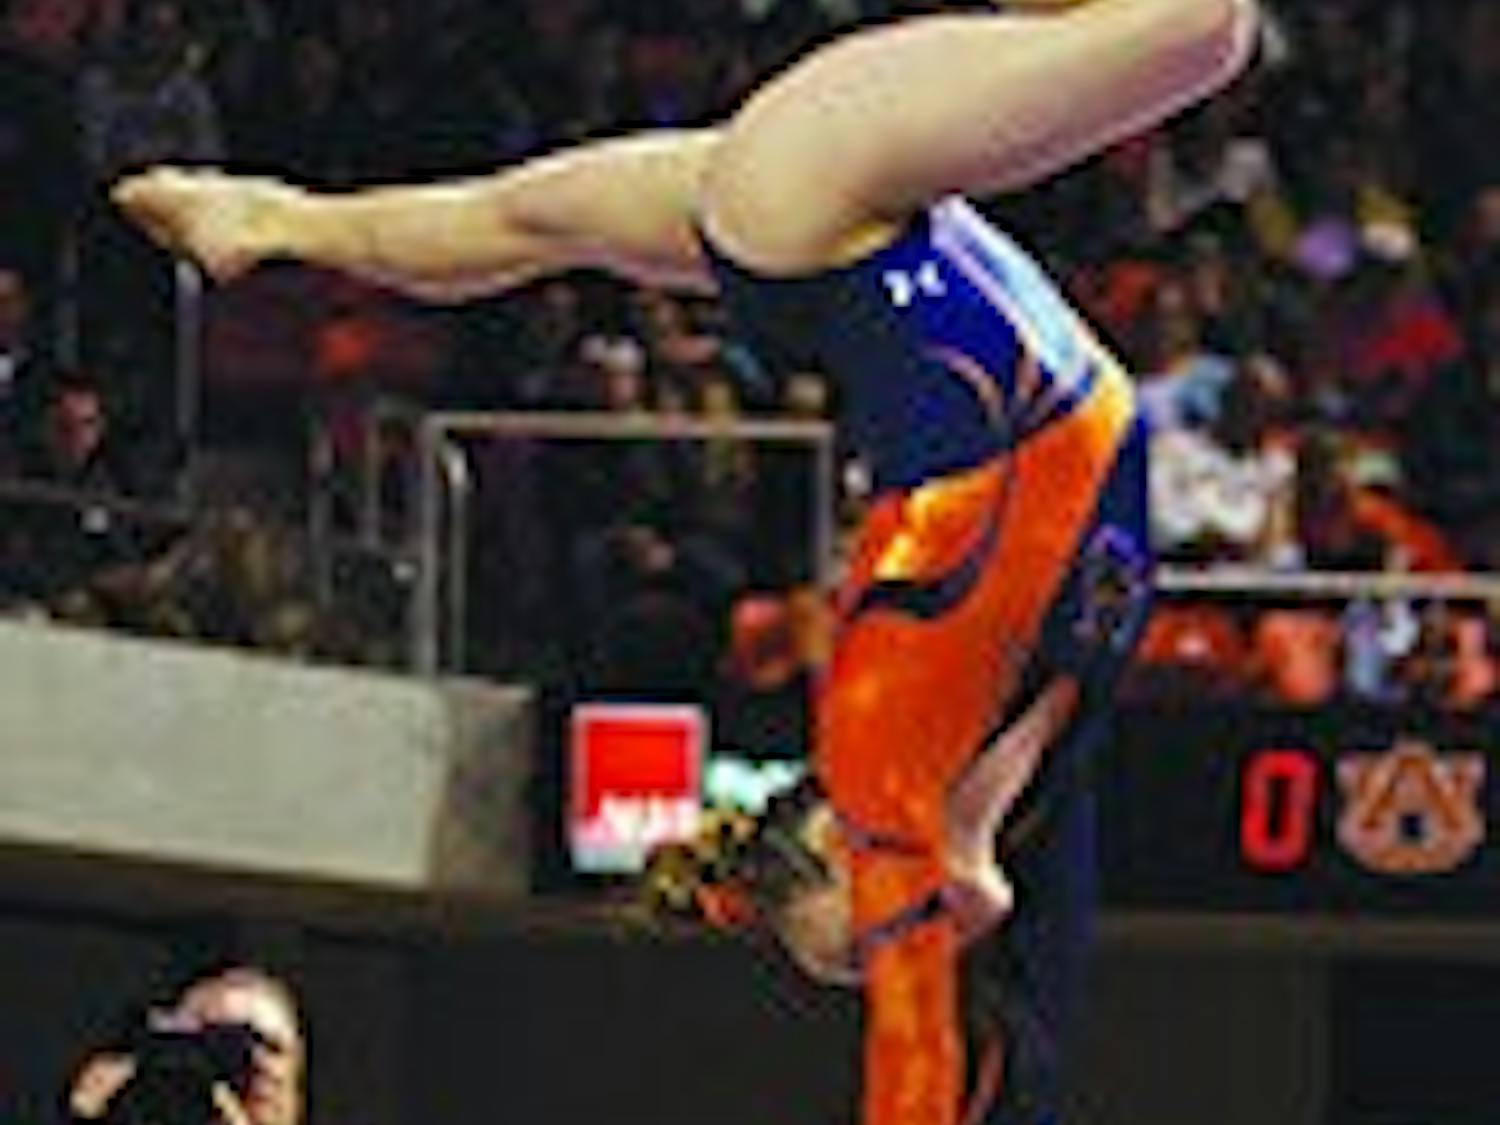 gymnastics